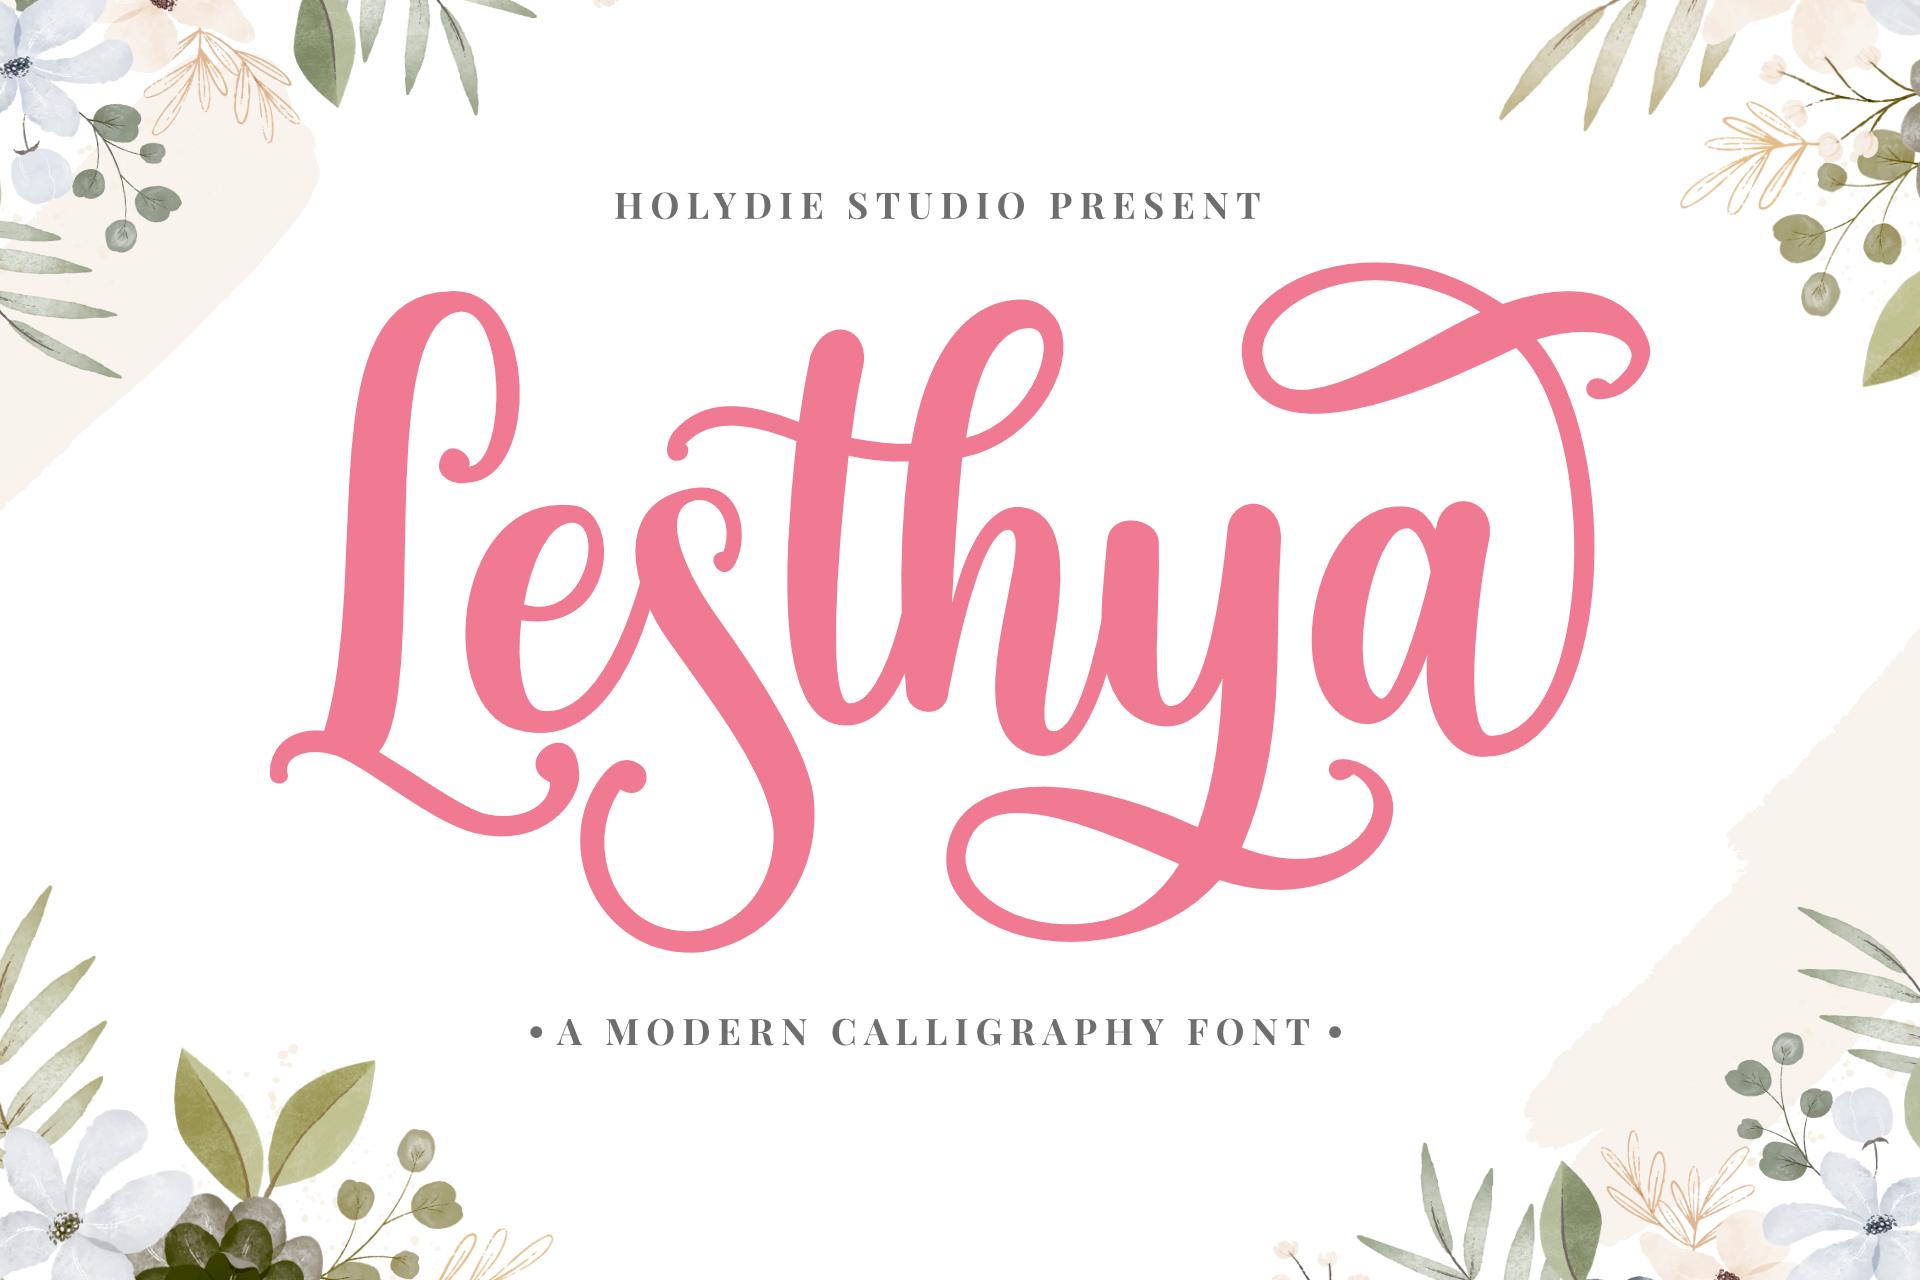 Lesthya Font